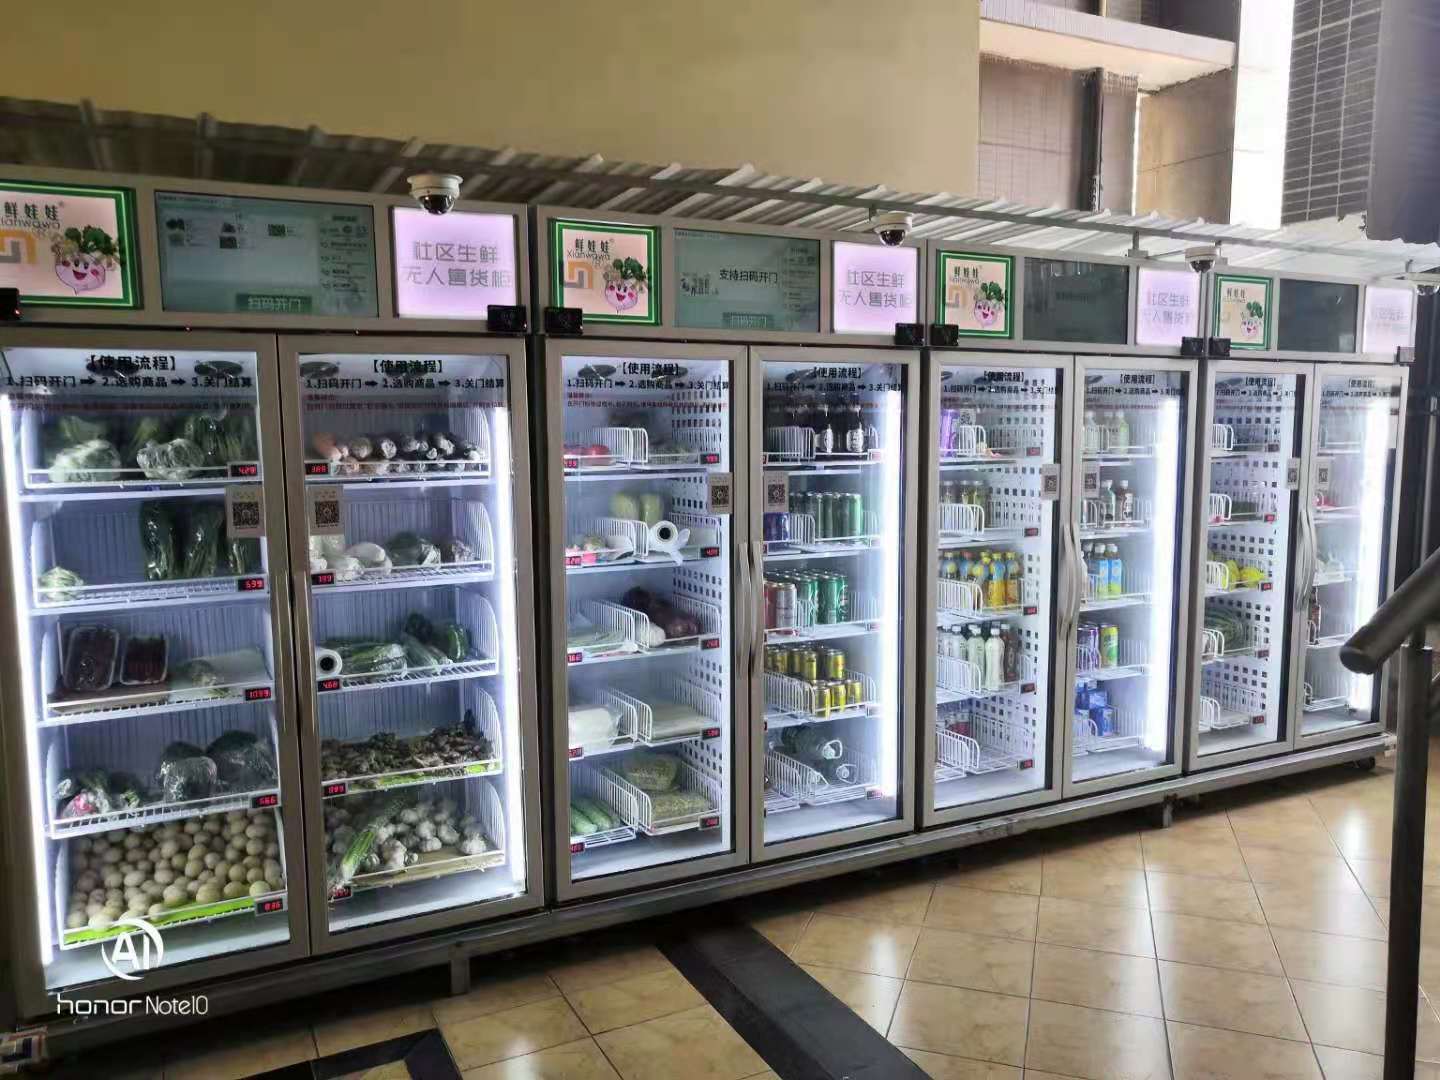 Smart vending fridge selling fresh farm produce